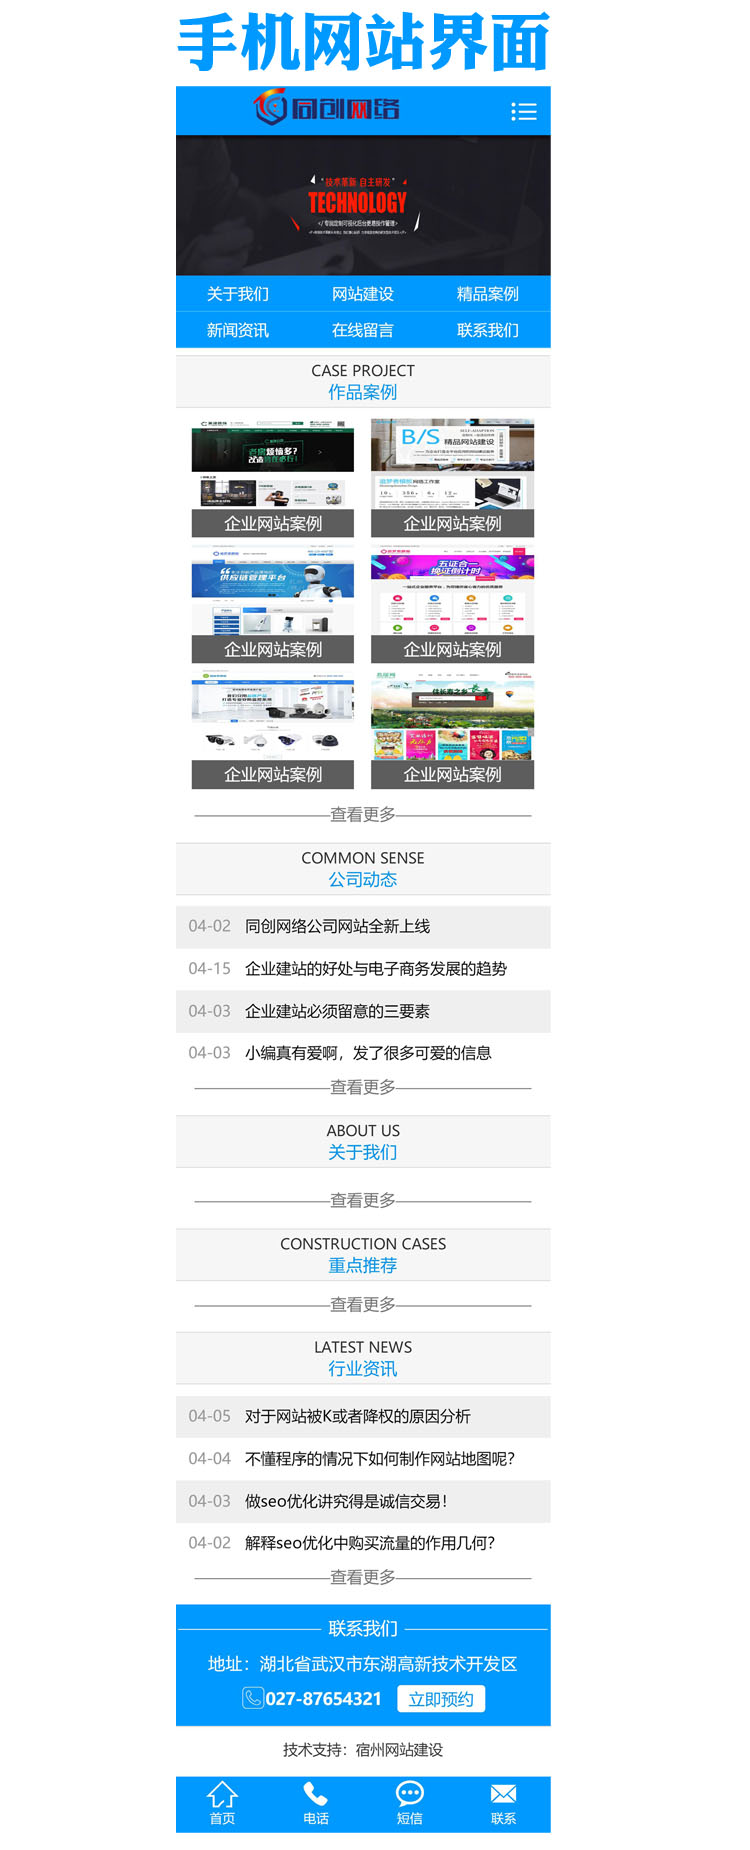 上海同创网络科技有限公司.jpg